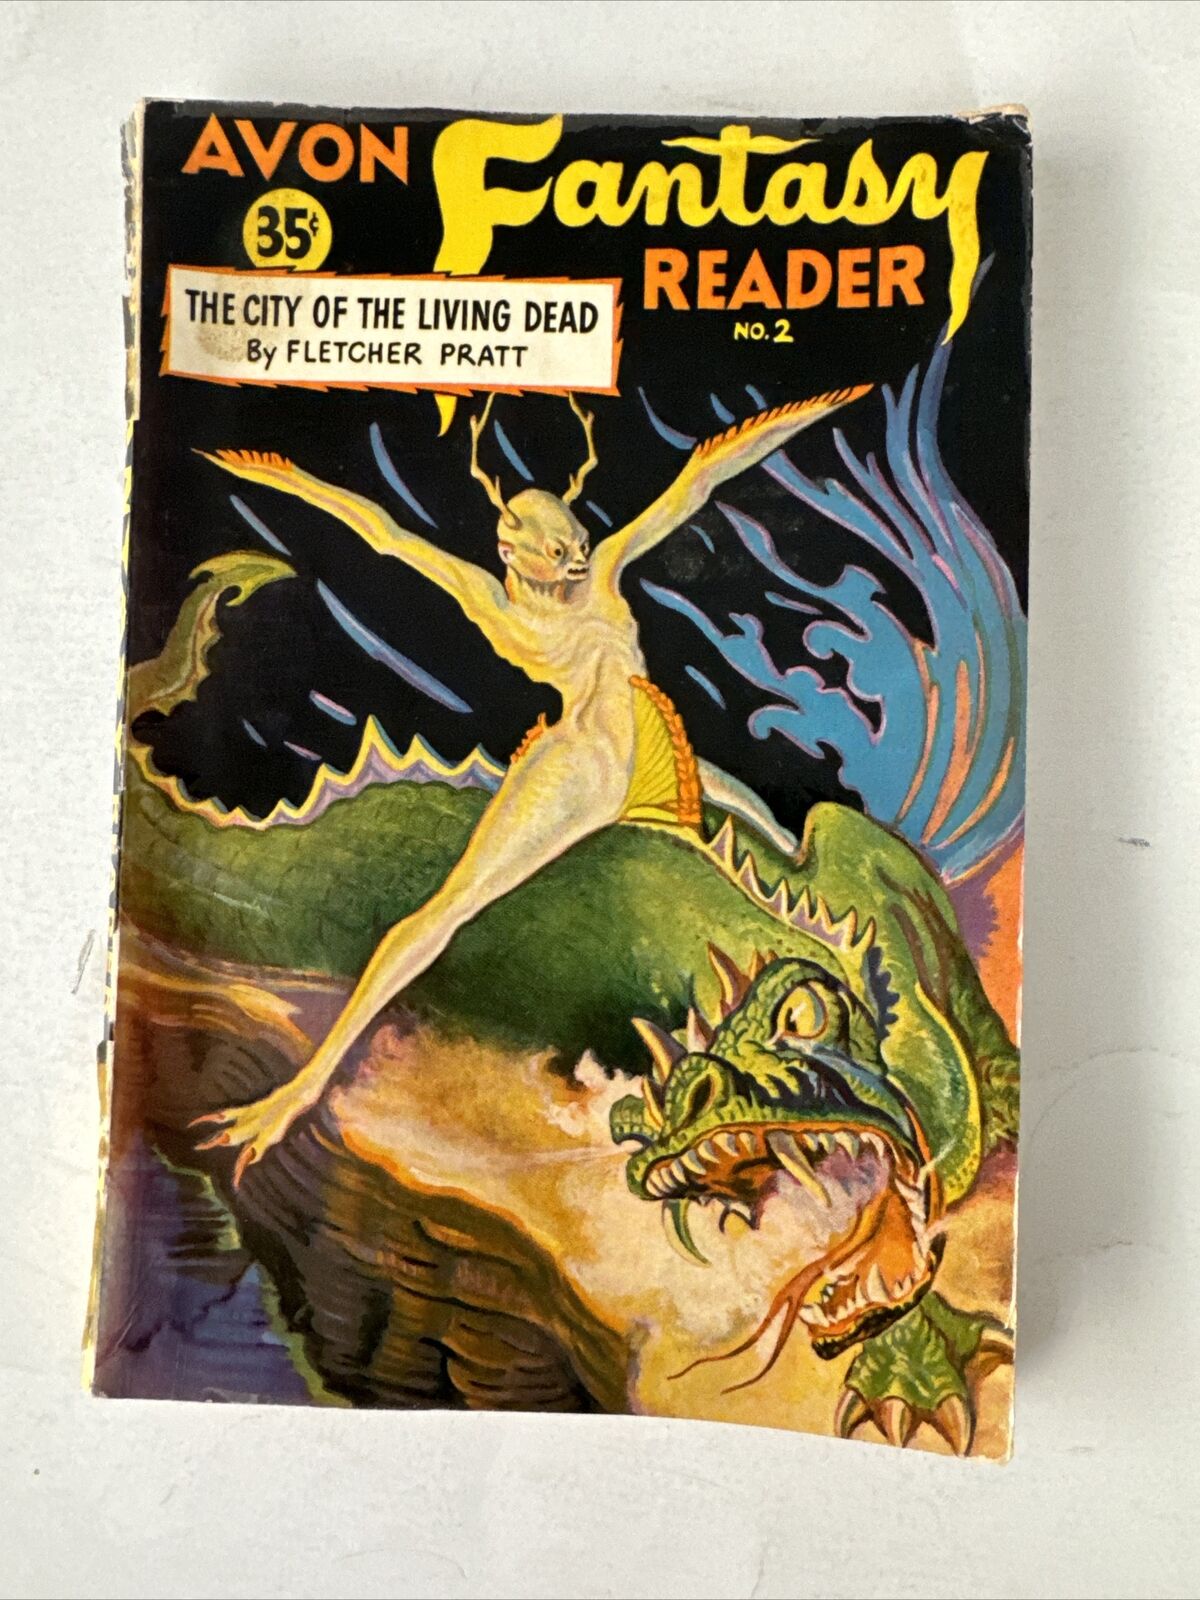 Avon Fantasy Reader #2 1947